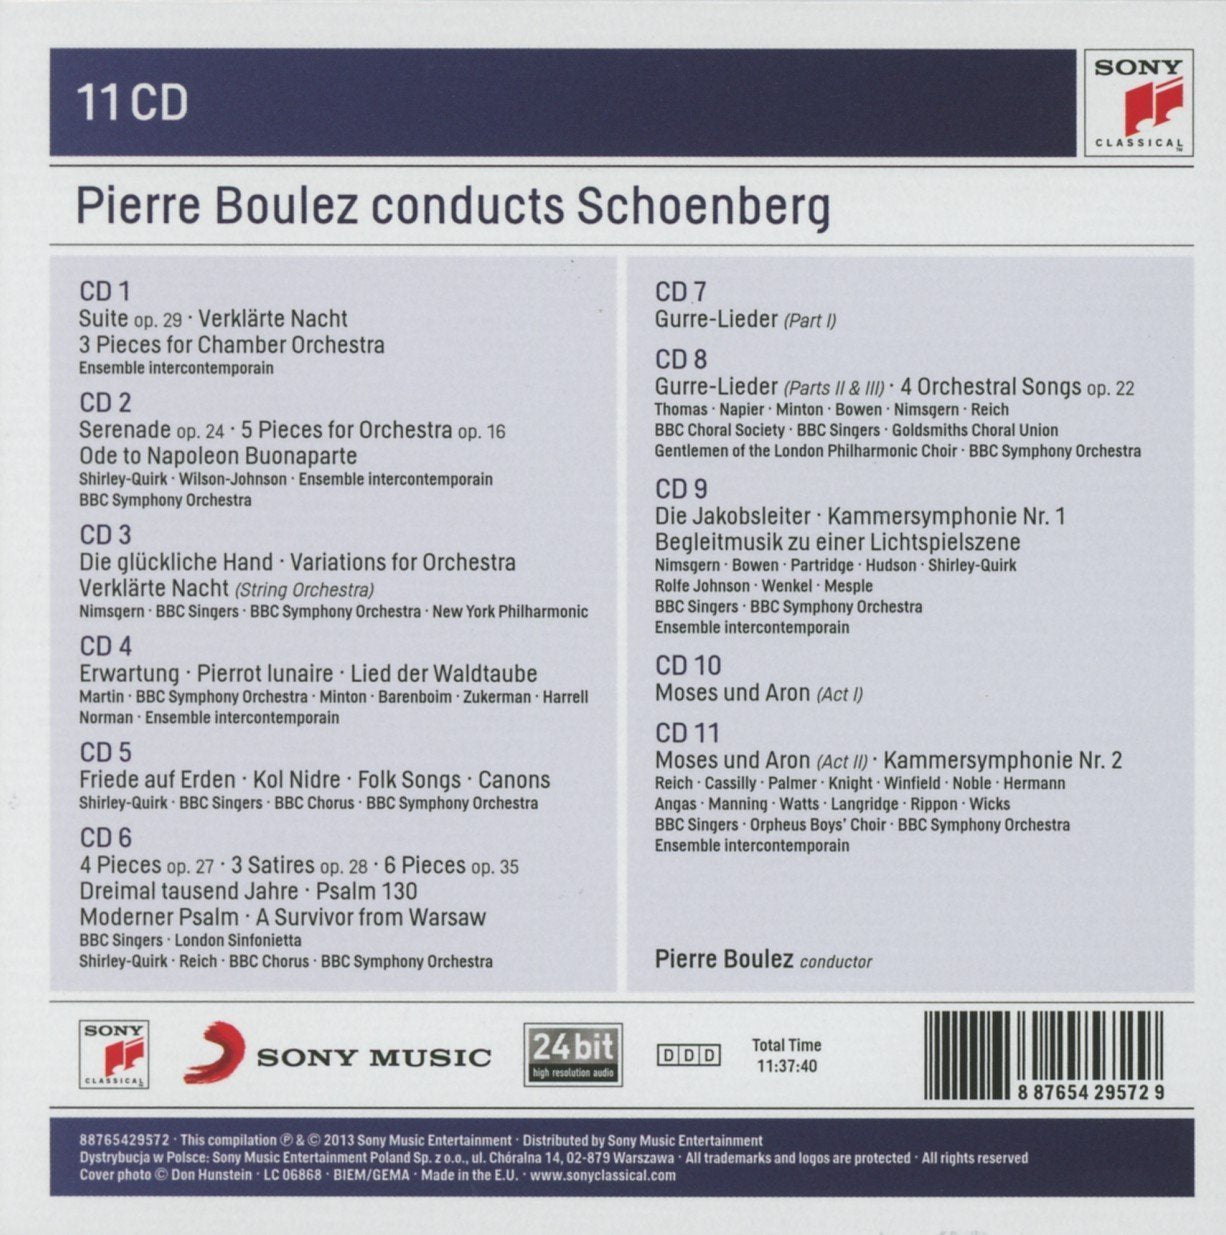 PIERRE BOULEZ CONDUCTS SCHOENBERG - Ensemble Intercontemporain, BBC Singers, BBC Symphony Orchestra (11 CDS)